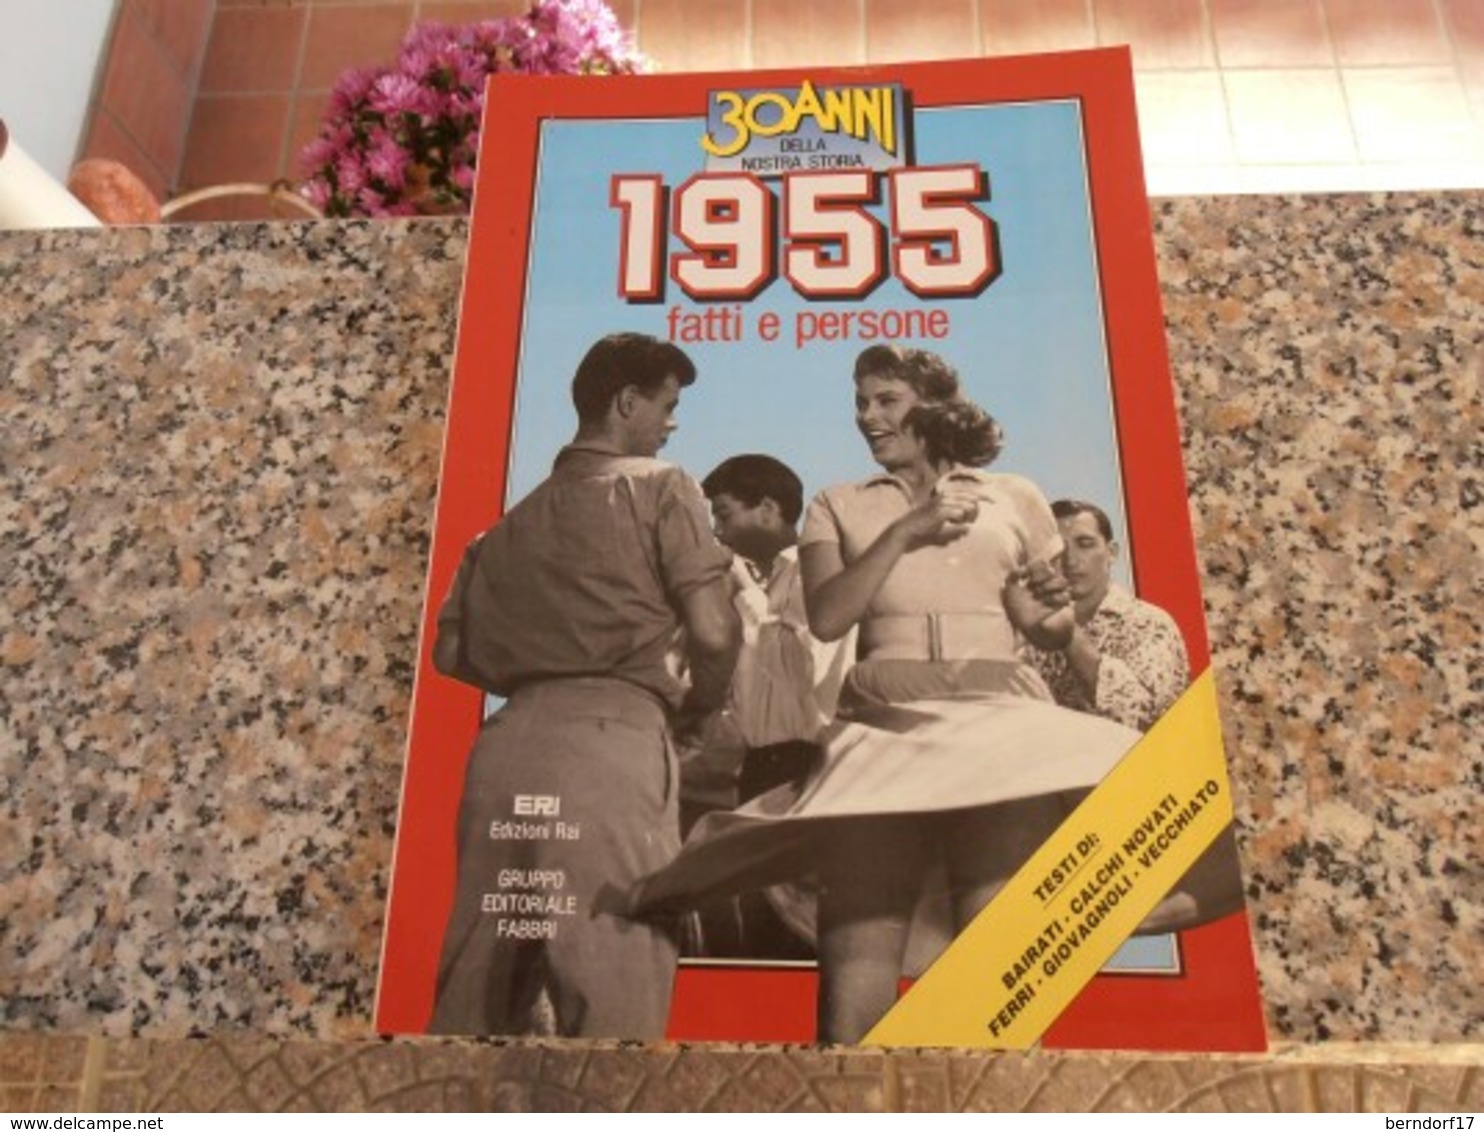 30 Anni Della Nostra Storia 1955 - Society, Politics & Economy